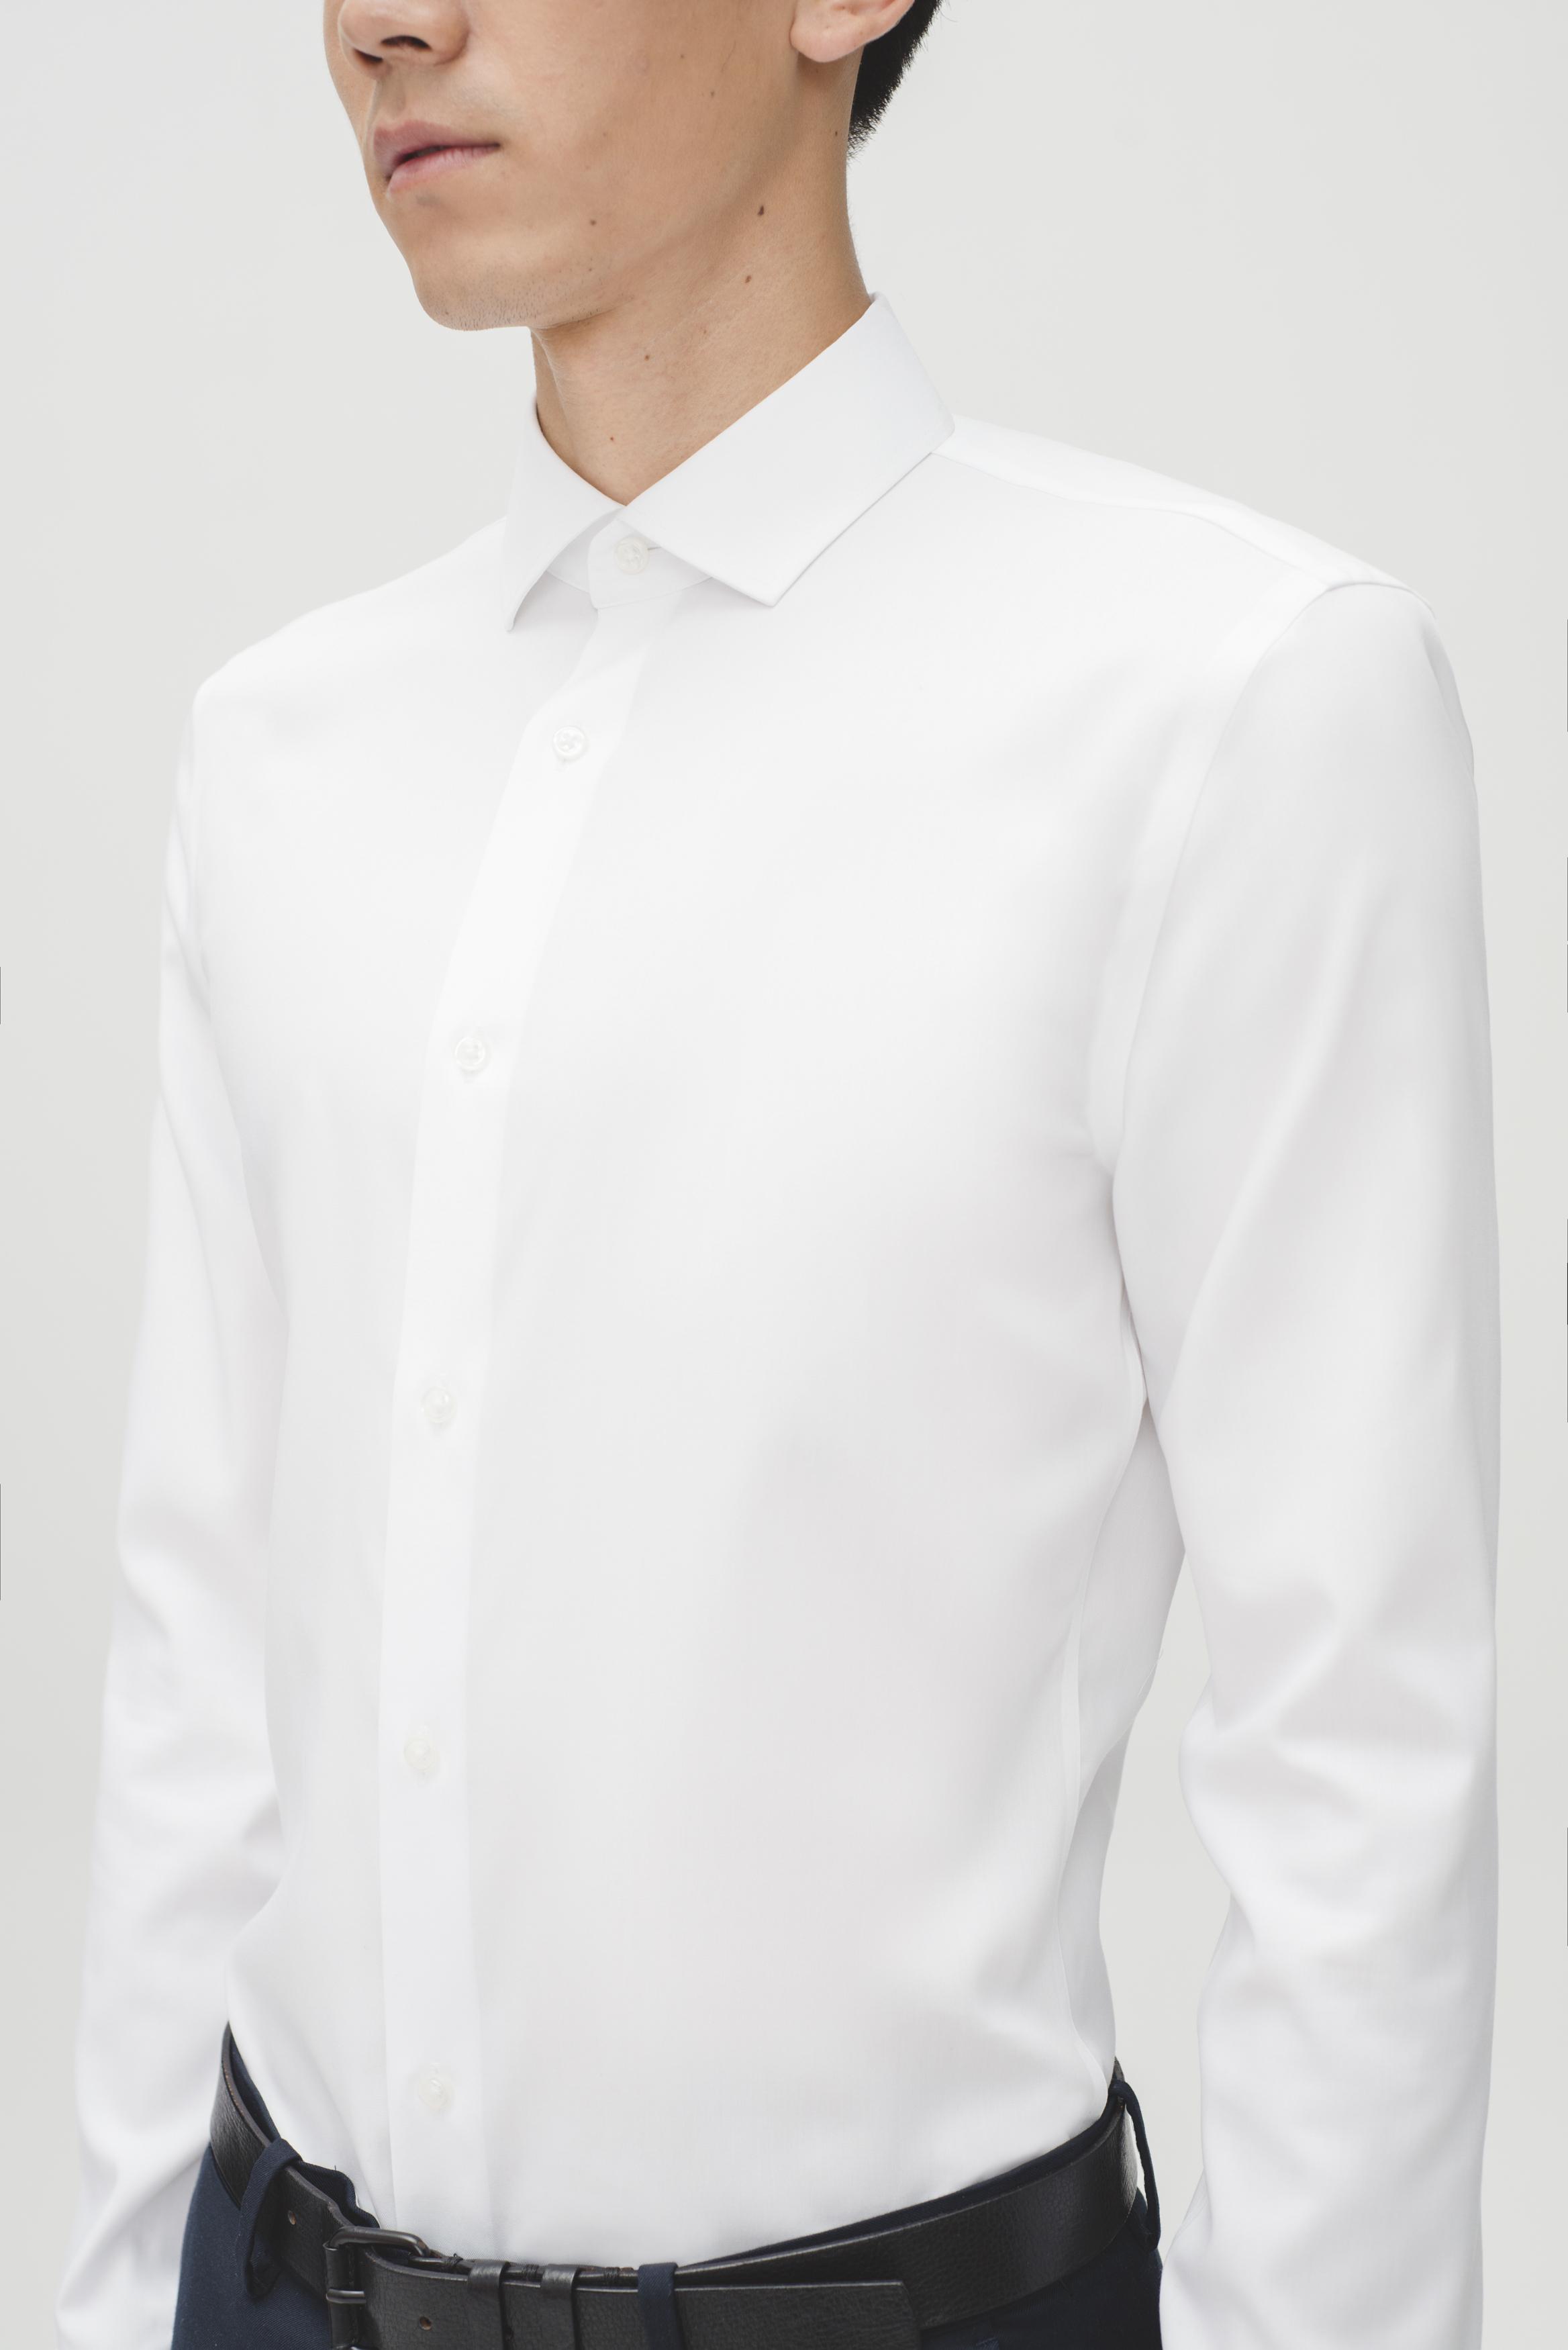 男生白衬衫应该怎么搭配才不会显得太正式或是太俗？ - 知乎